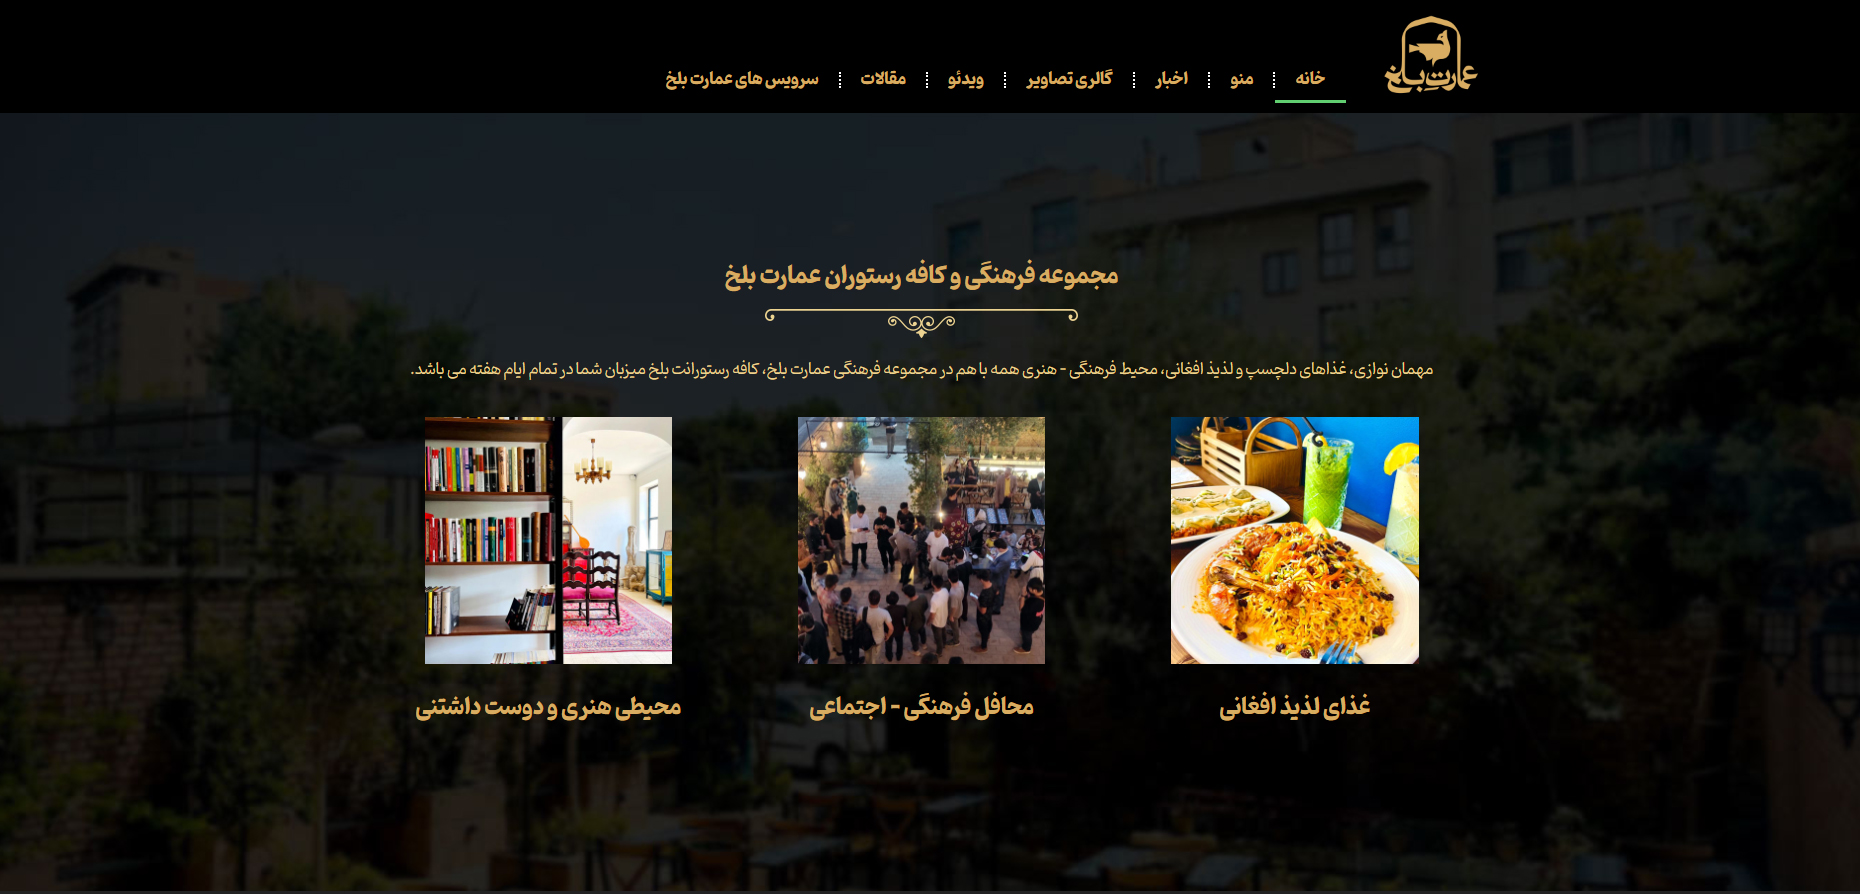 سایت مجموعه فرهنگی و کافه رستوران عمارت بلخ